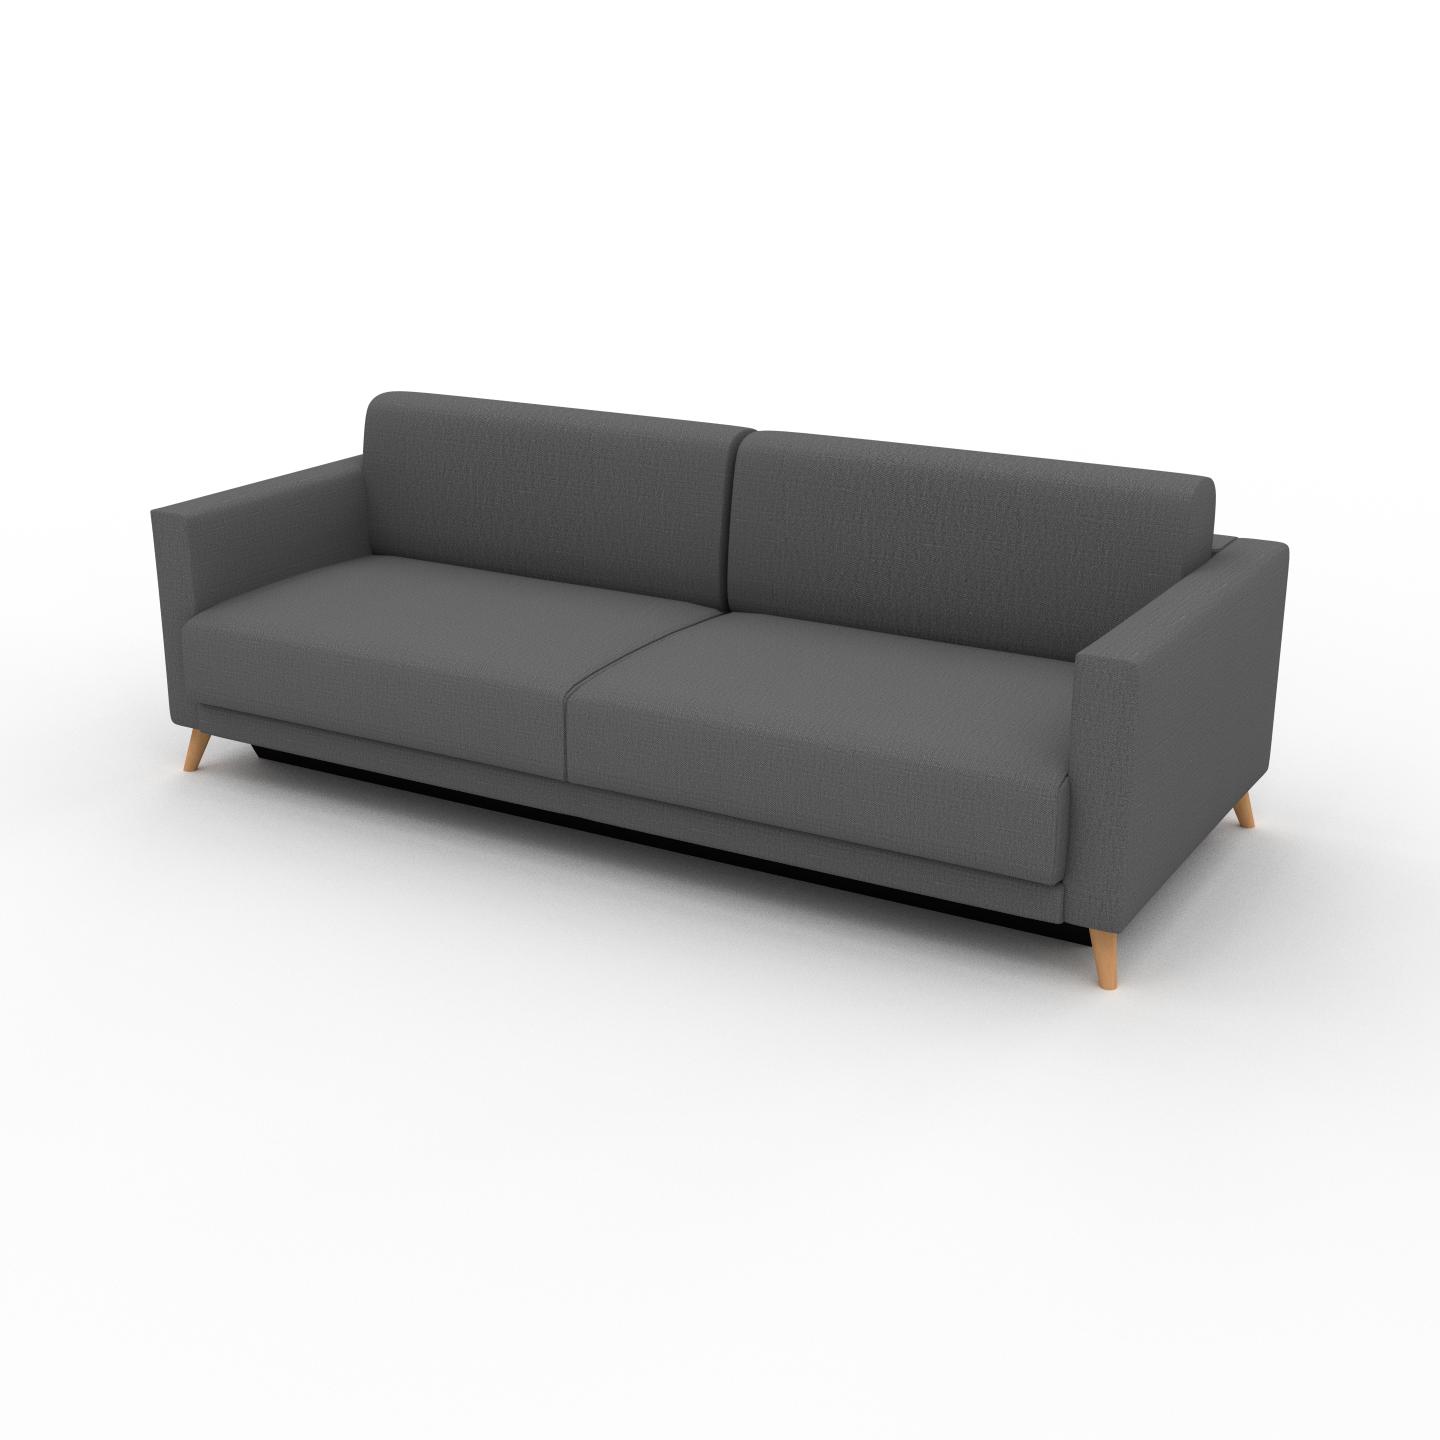 MYCS Sofa 3-Sitzer Steingrau Webstoff - Elegantes, gemütliches 3-Sitzer Sofa: Hochwertige Qualität, einzigartiges Design - 225 x 75 x 98 cm, konfigurierbar